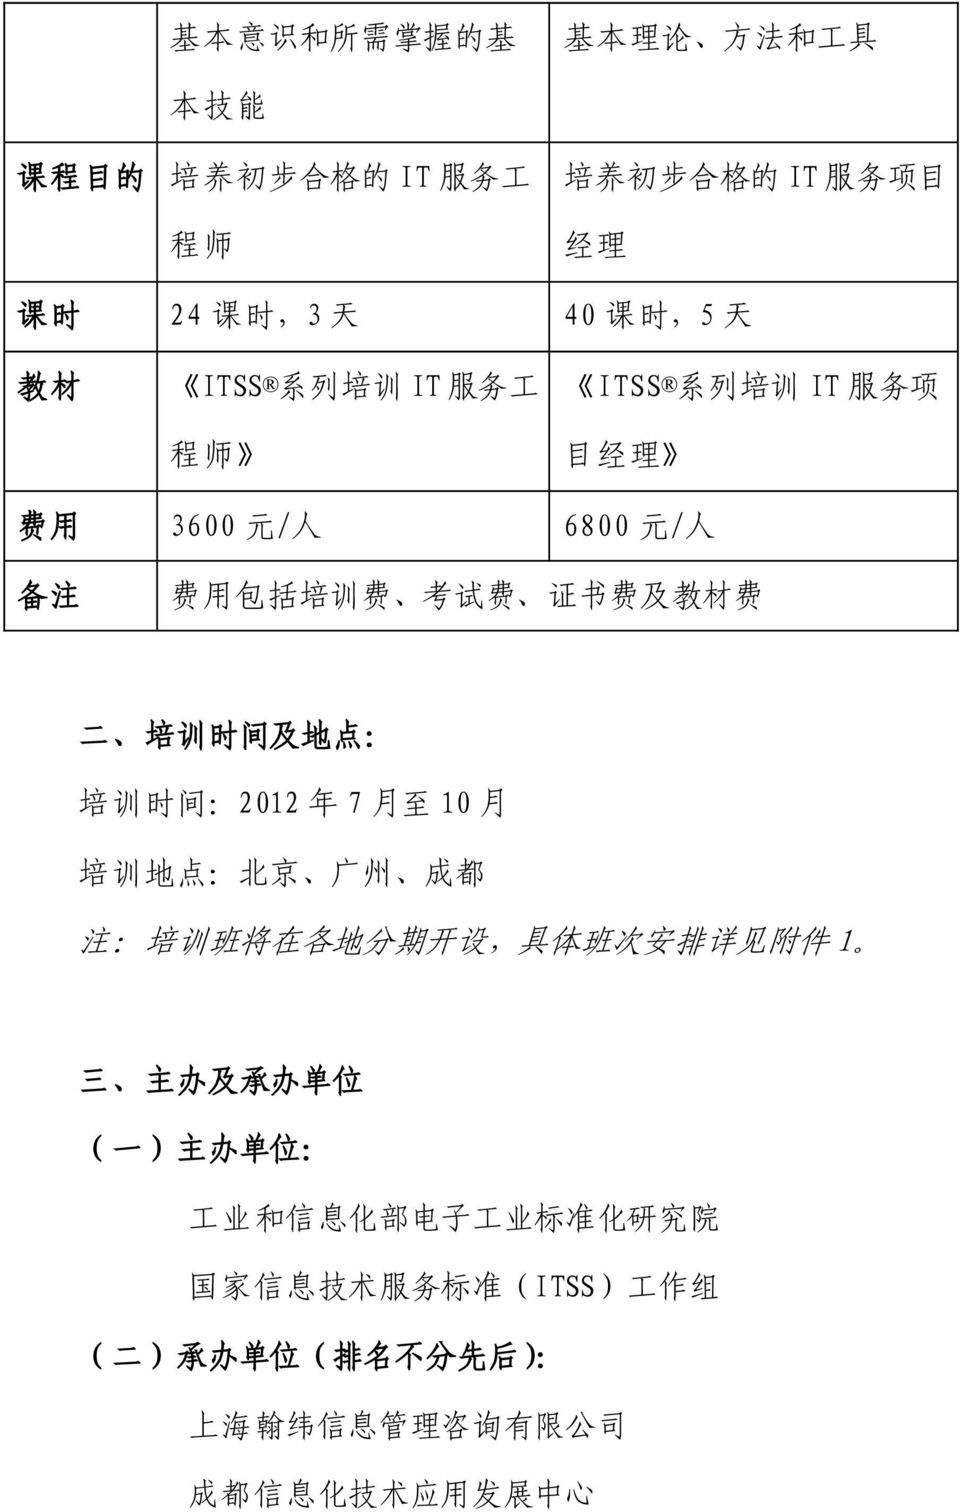 时 间 :2012 年 7 月 至 10 月 培 训 地 点 : 北 京 广 州 成 都 注 : 培 训 班 将 在 各 地 分 期 开 设, 具 体 班 次 安 排 详 见 附 件 1 三 主 办 及 承 办 单 位 ( 一 ) 主 办 单 位 : 工 业 和 信 息 化 部